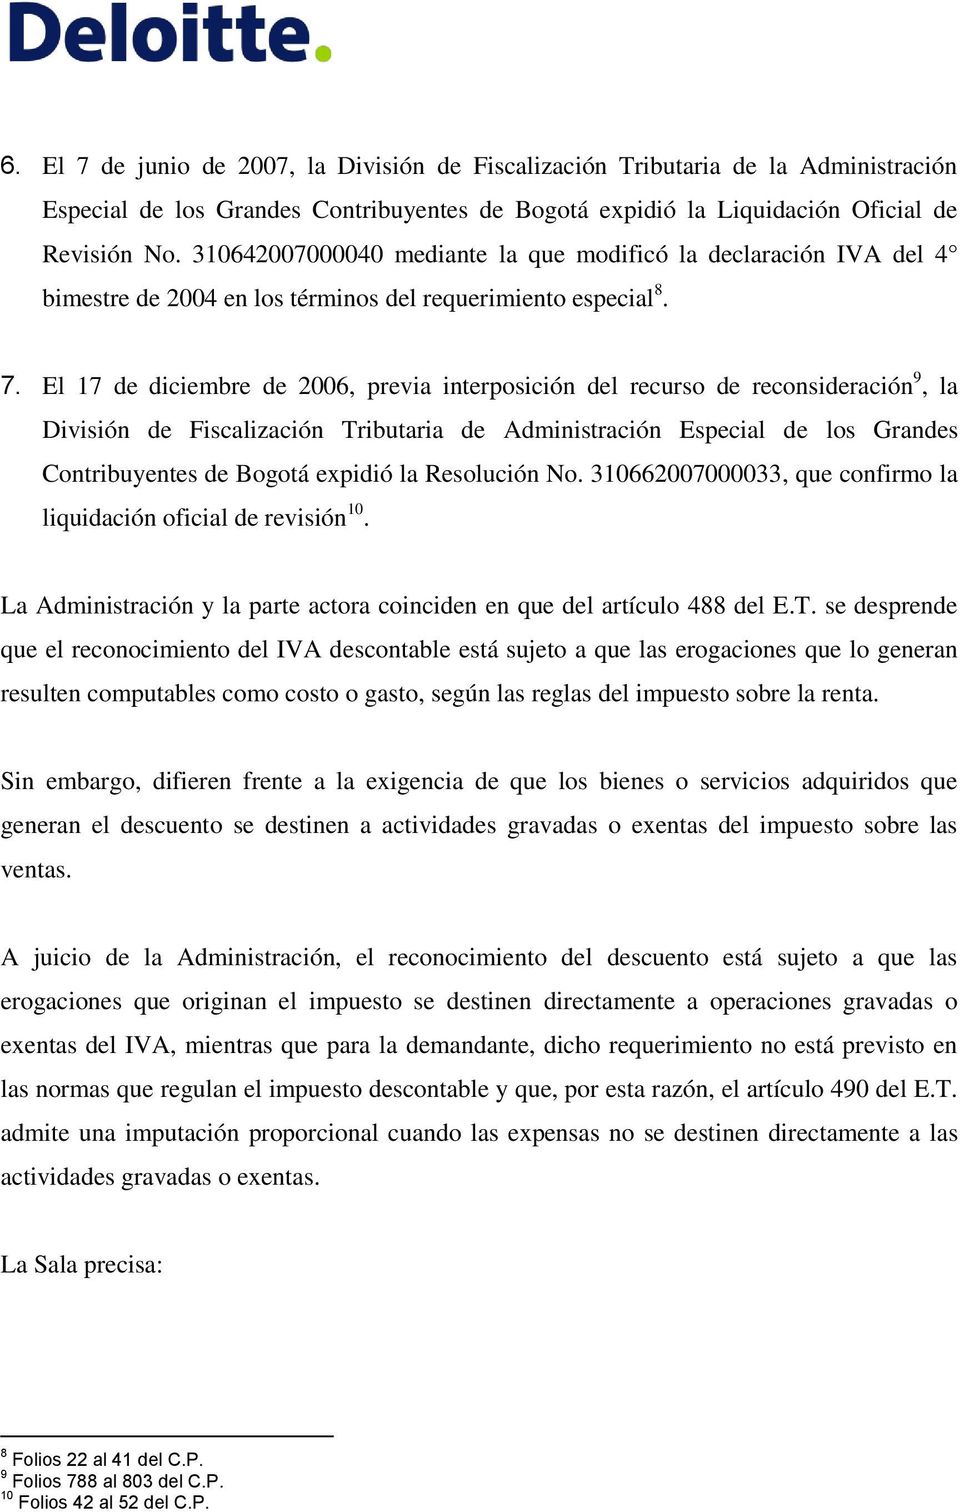 El 17 de diciembre de 2006, previa interposición del recurso de reconsideración 9, la División de Fiscalización Tributaria de Administración Especial de los Grandes Contribuyentes de Bogotá expidió